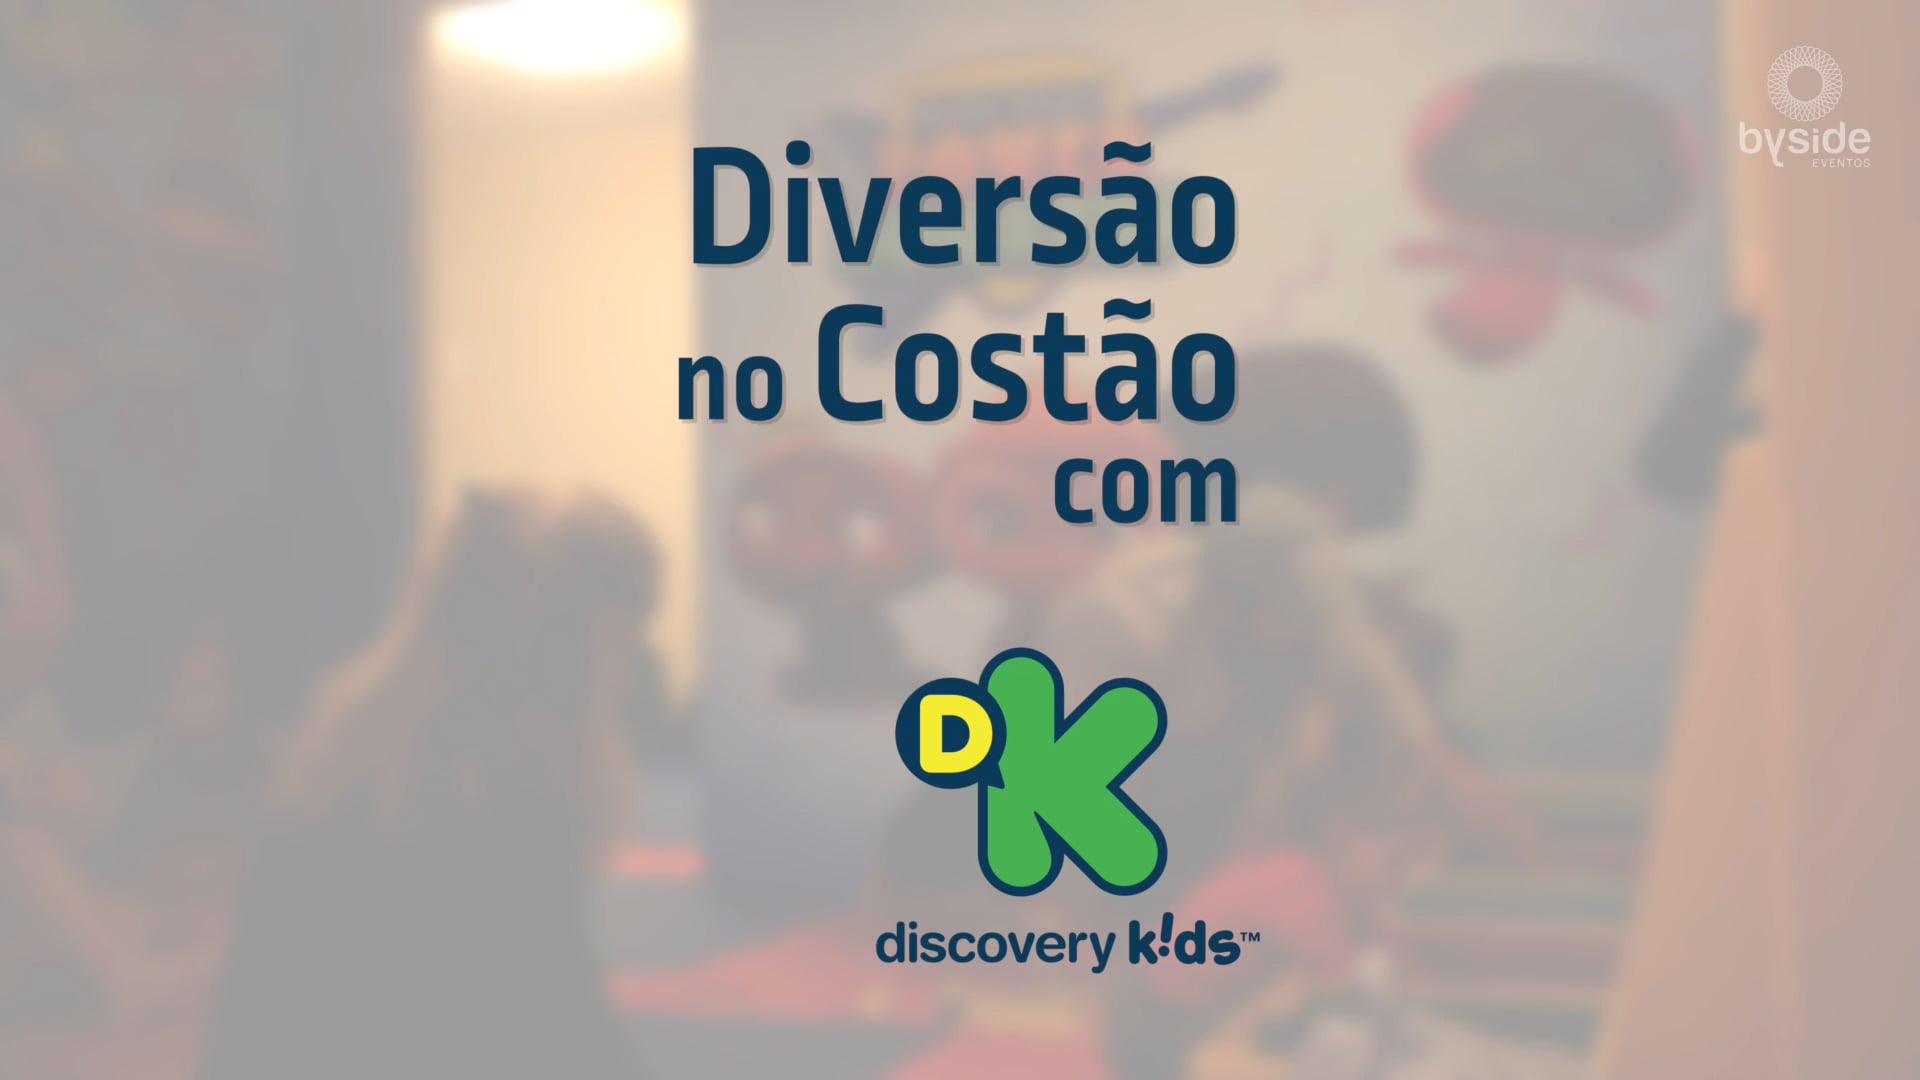 Byside - Costão do Santinho - Discovery Kids